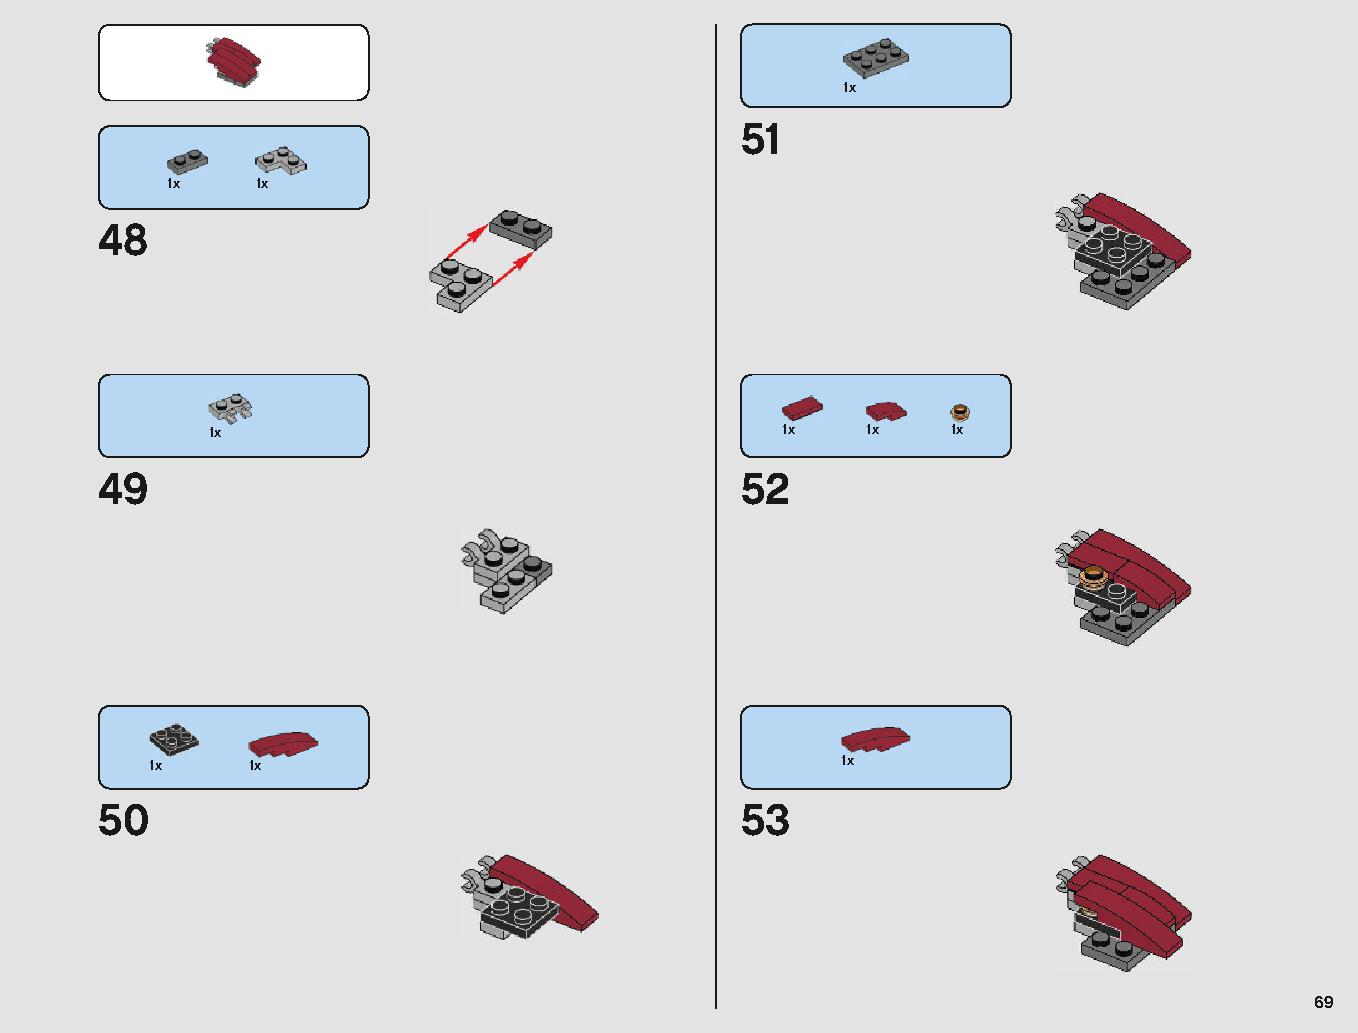 クラウド・シティ 75222 レゴの商品情報 レゴの説明書・組立方法 69 page